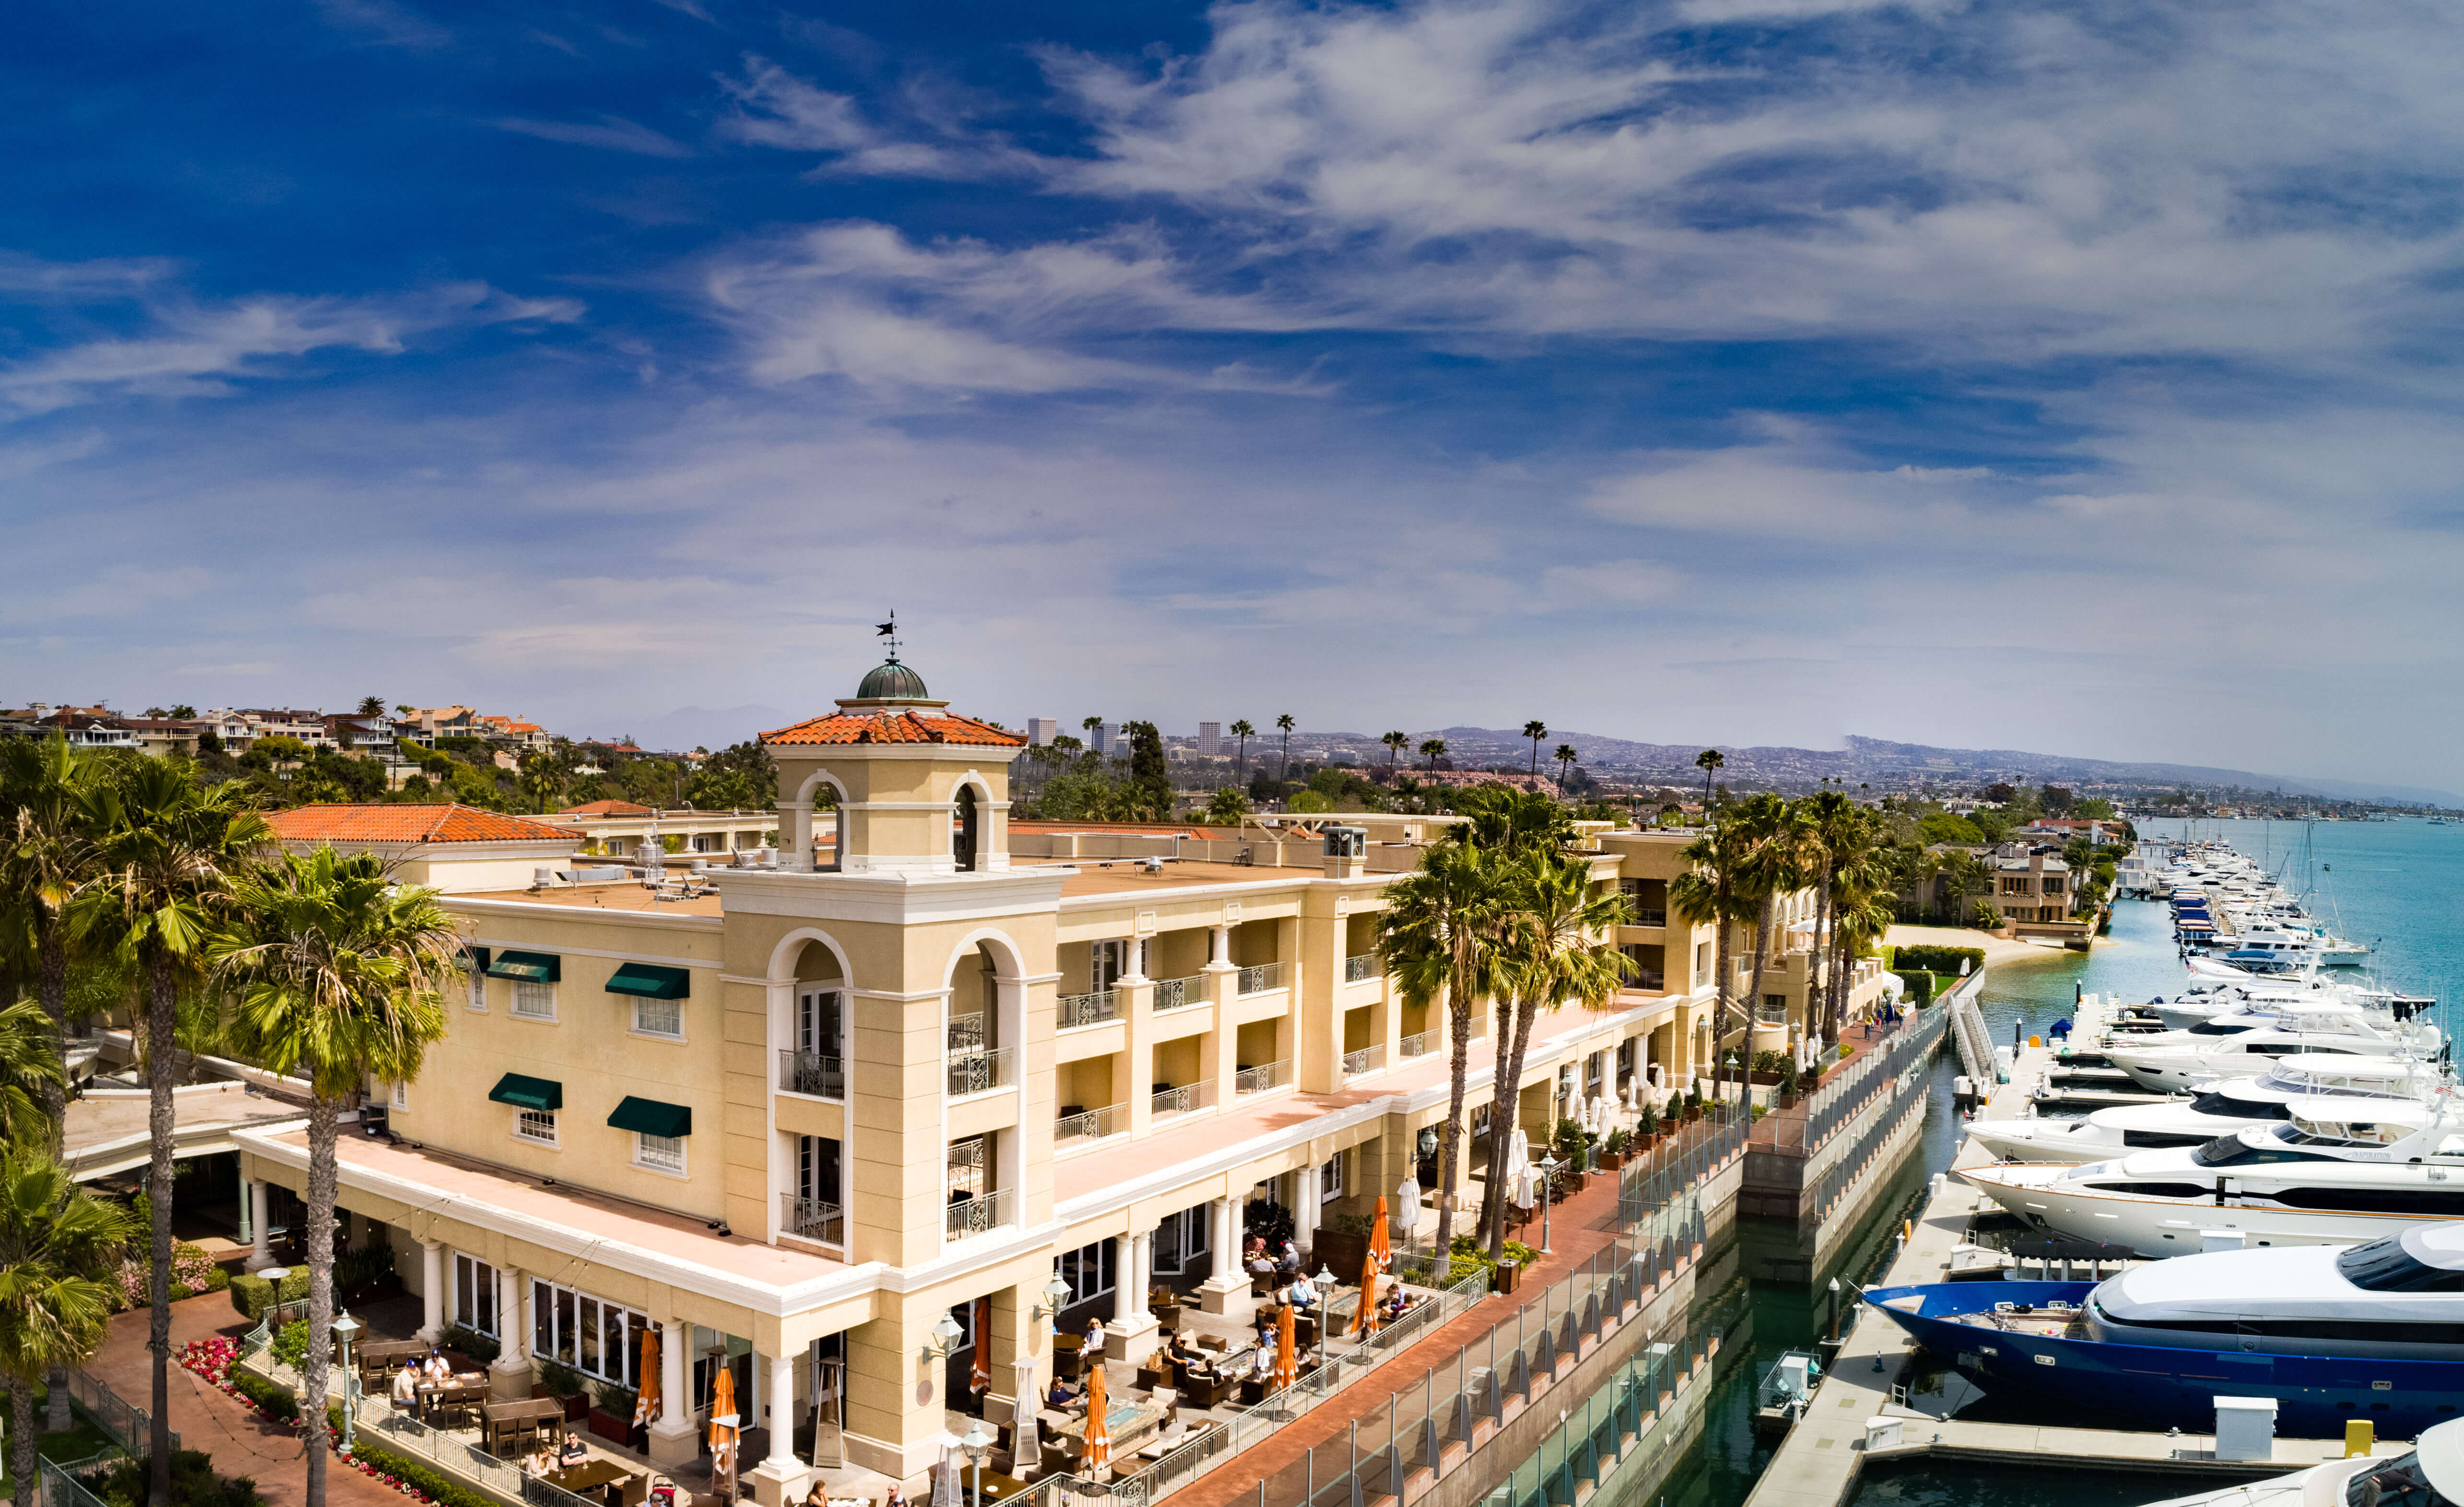 Balboa Bay Resort Returns as an Official Hotel Sponsor of the Hoag